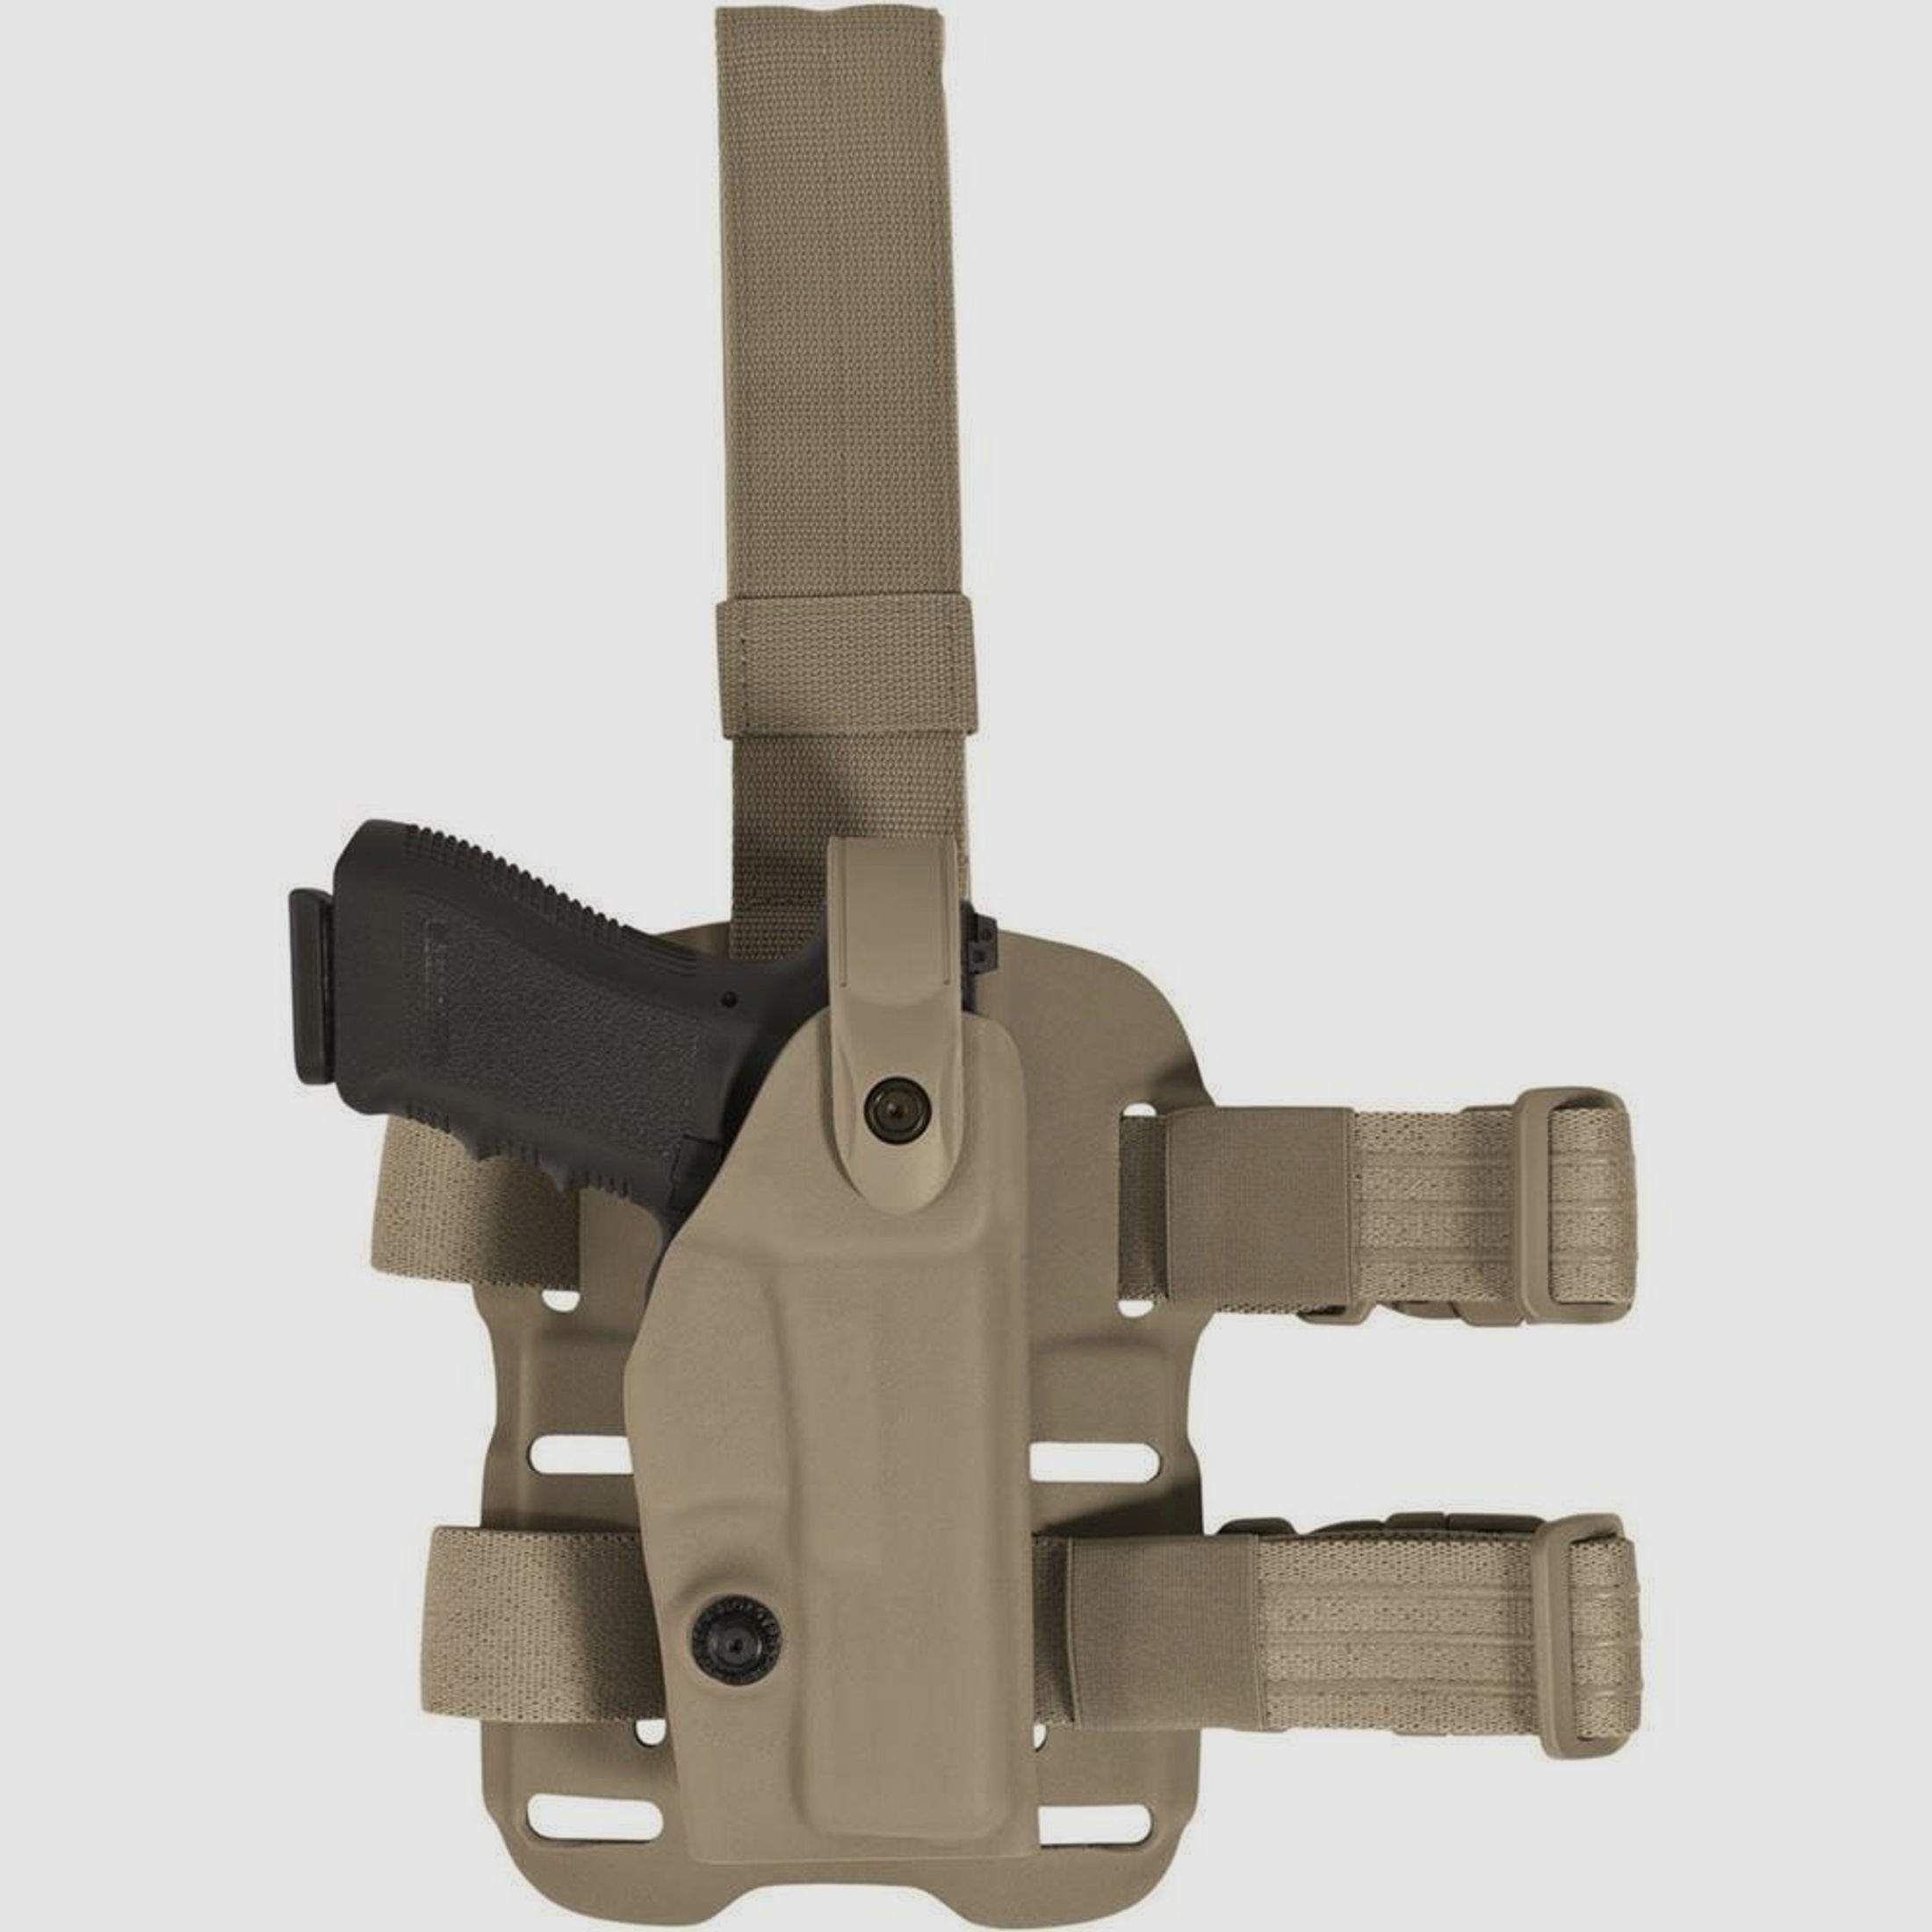 Modulares Oberschenkelholster "VETERAN" mit Sicherheitslevel II Glock 20 / 21-Schwarz-Rechtshänder